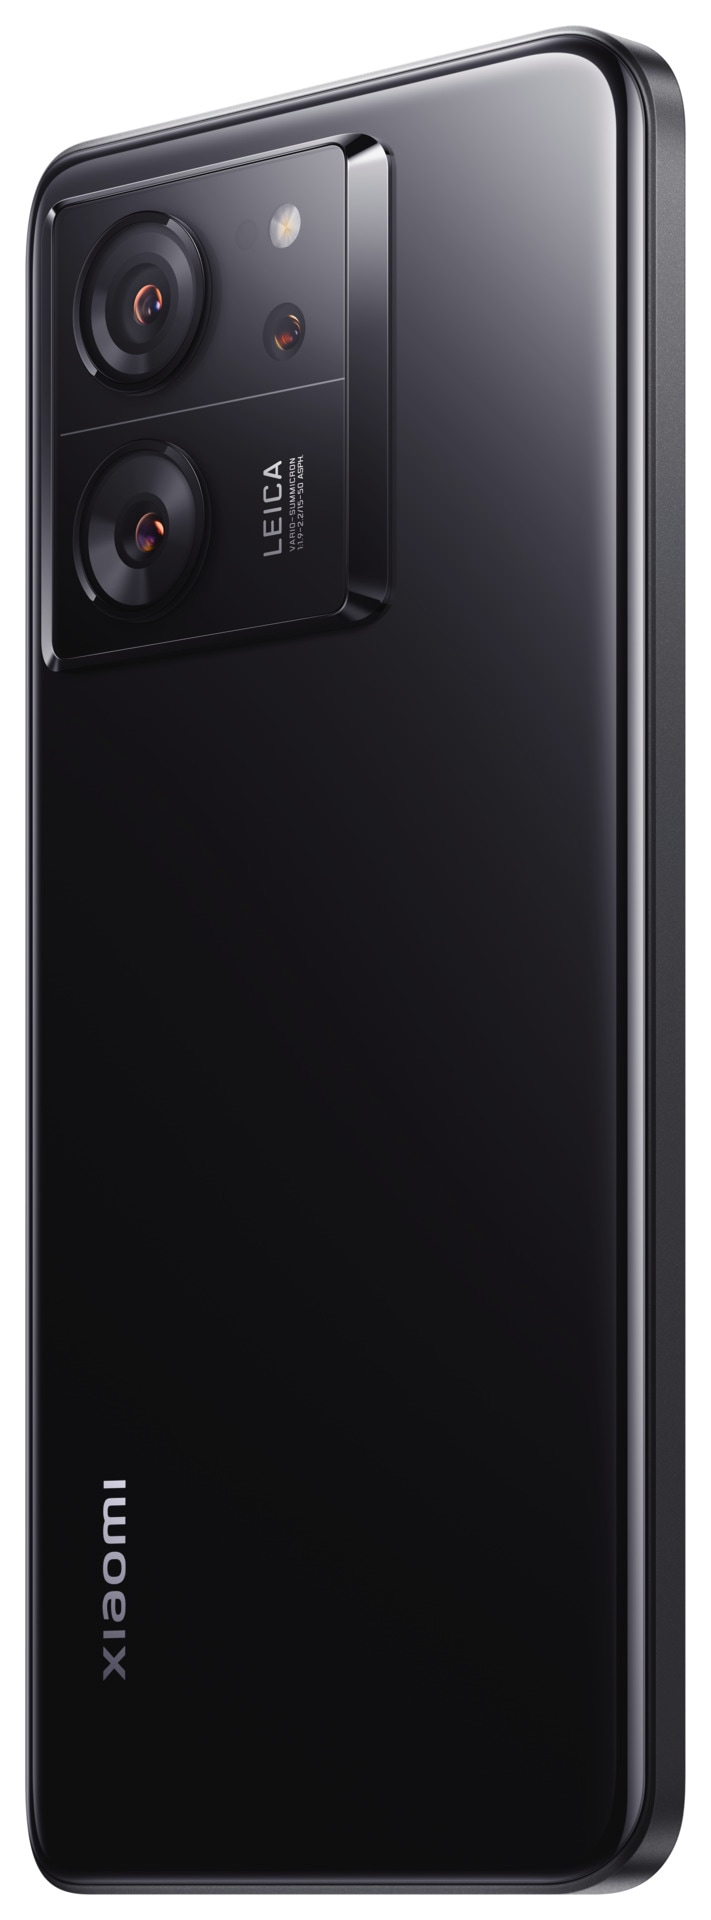 Xiaomi Smartphone »13T mit 8GB RAM + 256GB internem Speicher«, Schwarz, 16,94 cm/6,67 Zoll, 256 GB Speicherplatz, 50 MP Kamera, 16,94 cm (6,67 Zoll) 144 Hz CrystalRes AMOLED Display